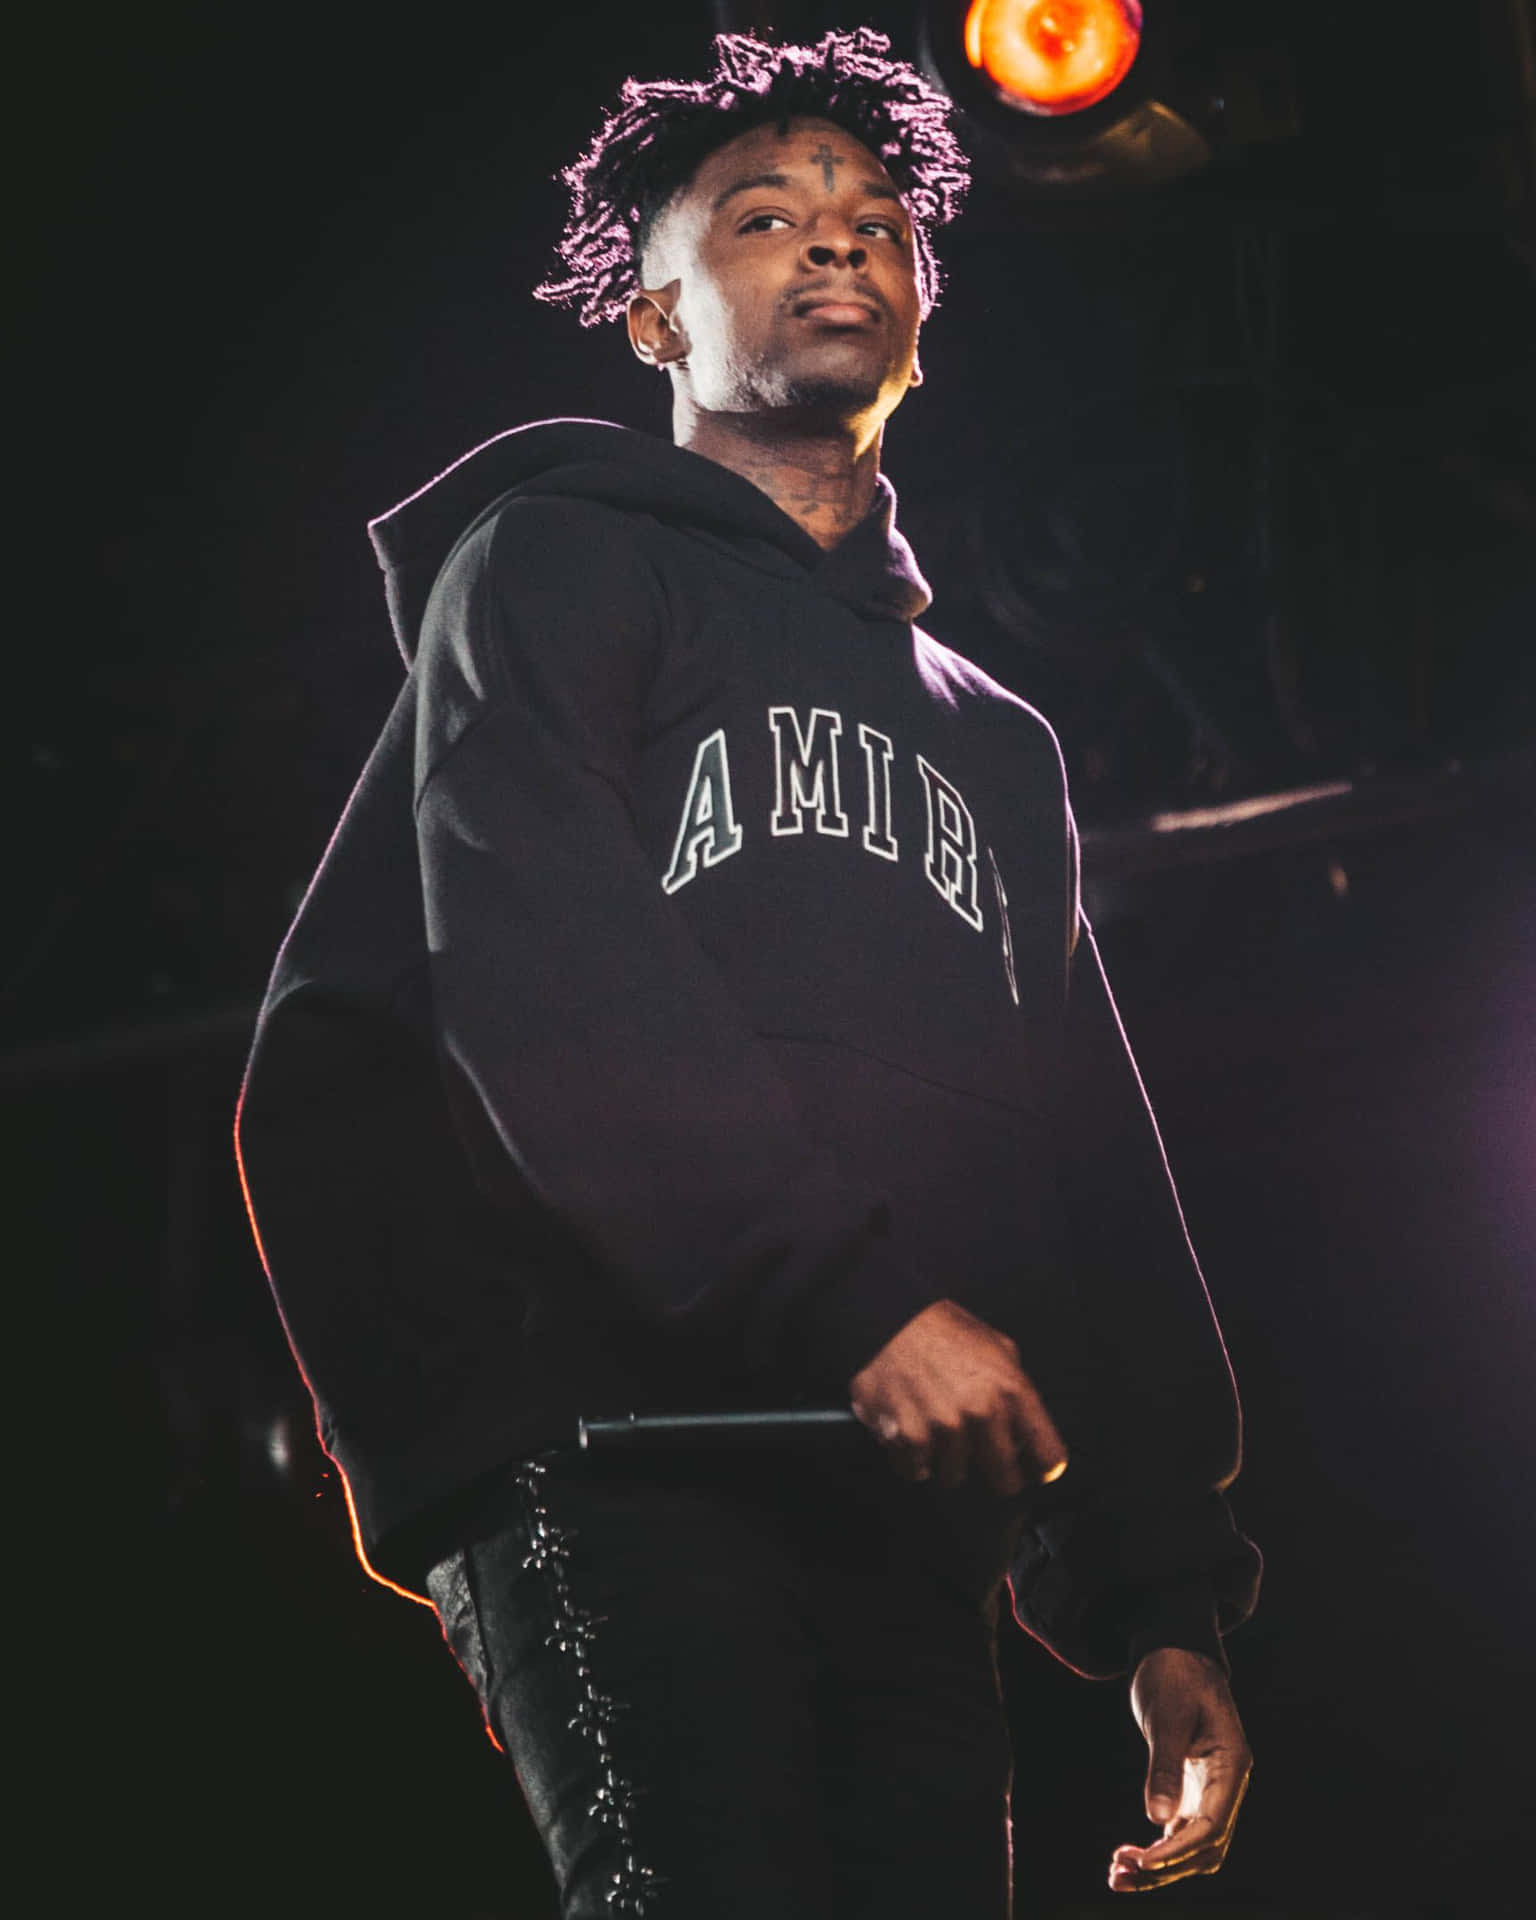 Download American hip-hop artist 21 Savage performing on stage